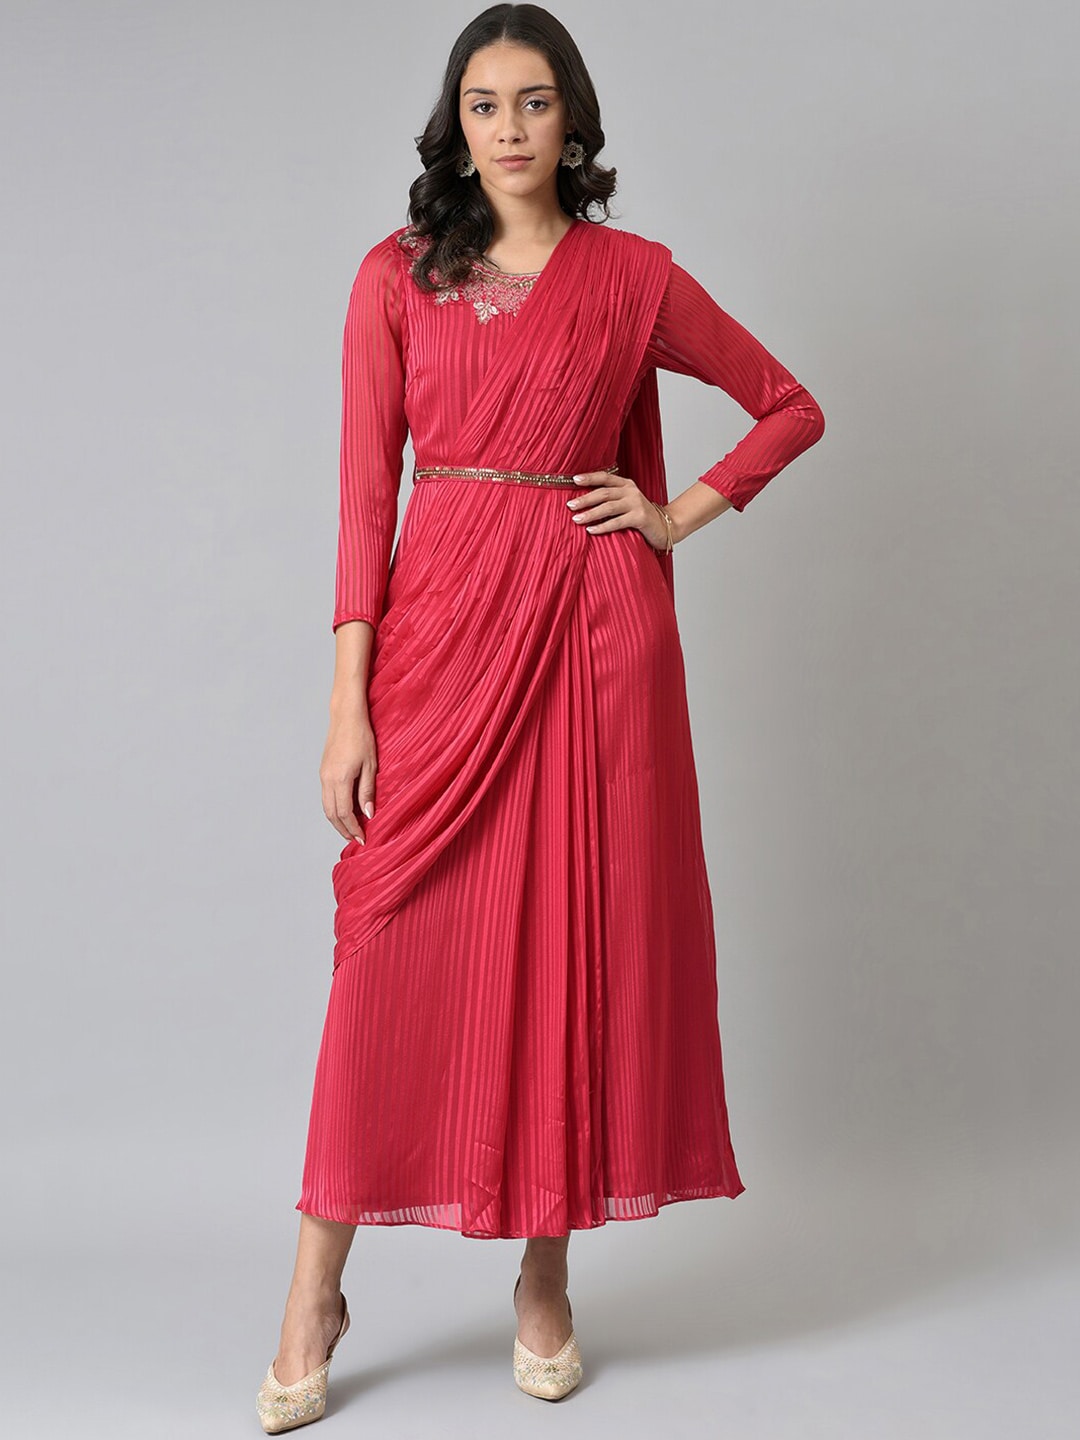 WISHFUL Red Striped Satin Ethnic Maxi Maxi Dress Price in India